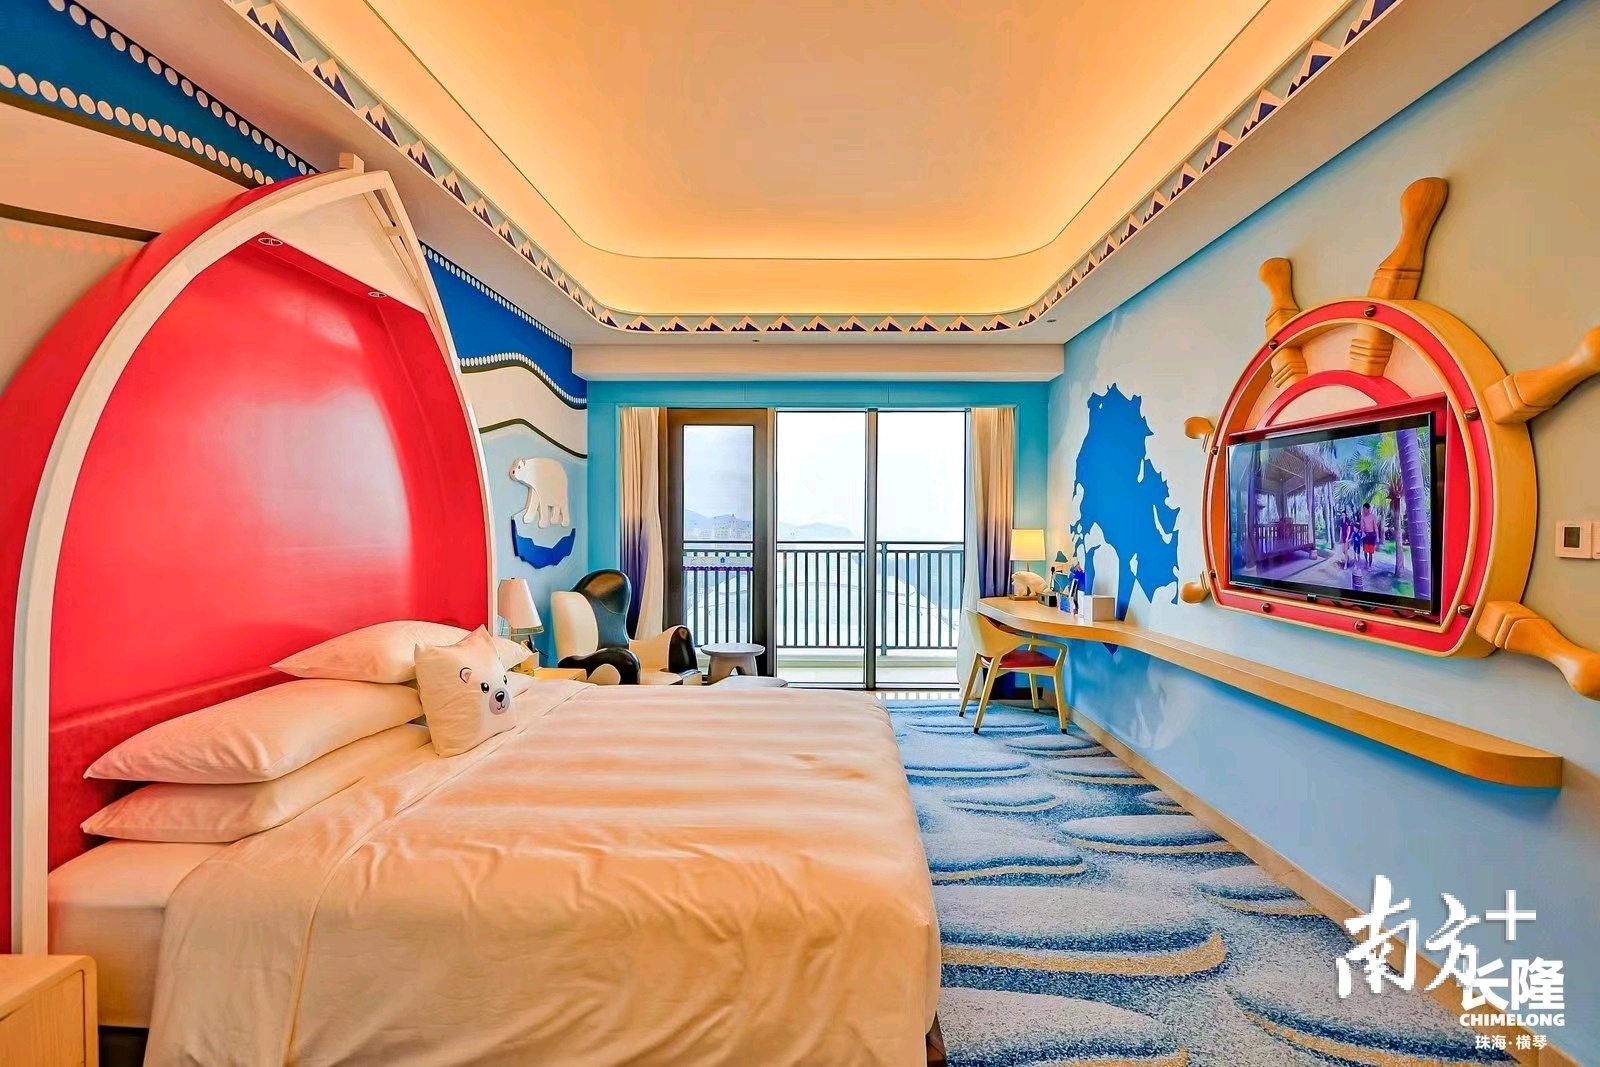 2021年最值得期待的亲子酒店！珠海长隆海洋科学酒店开业特惠！不要错过哟！_补差